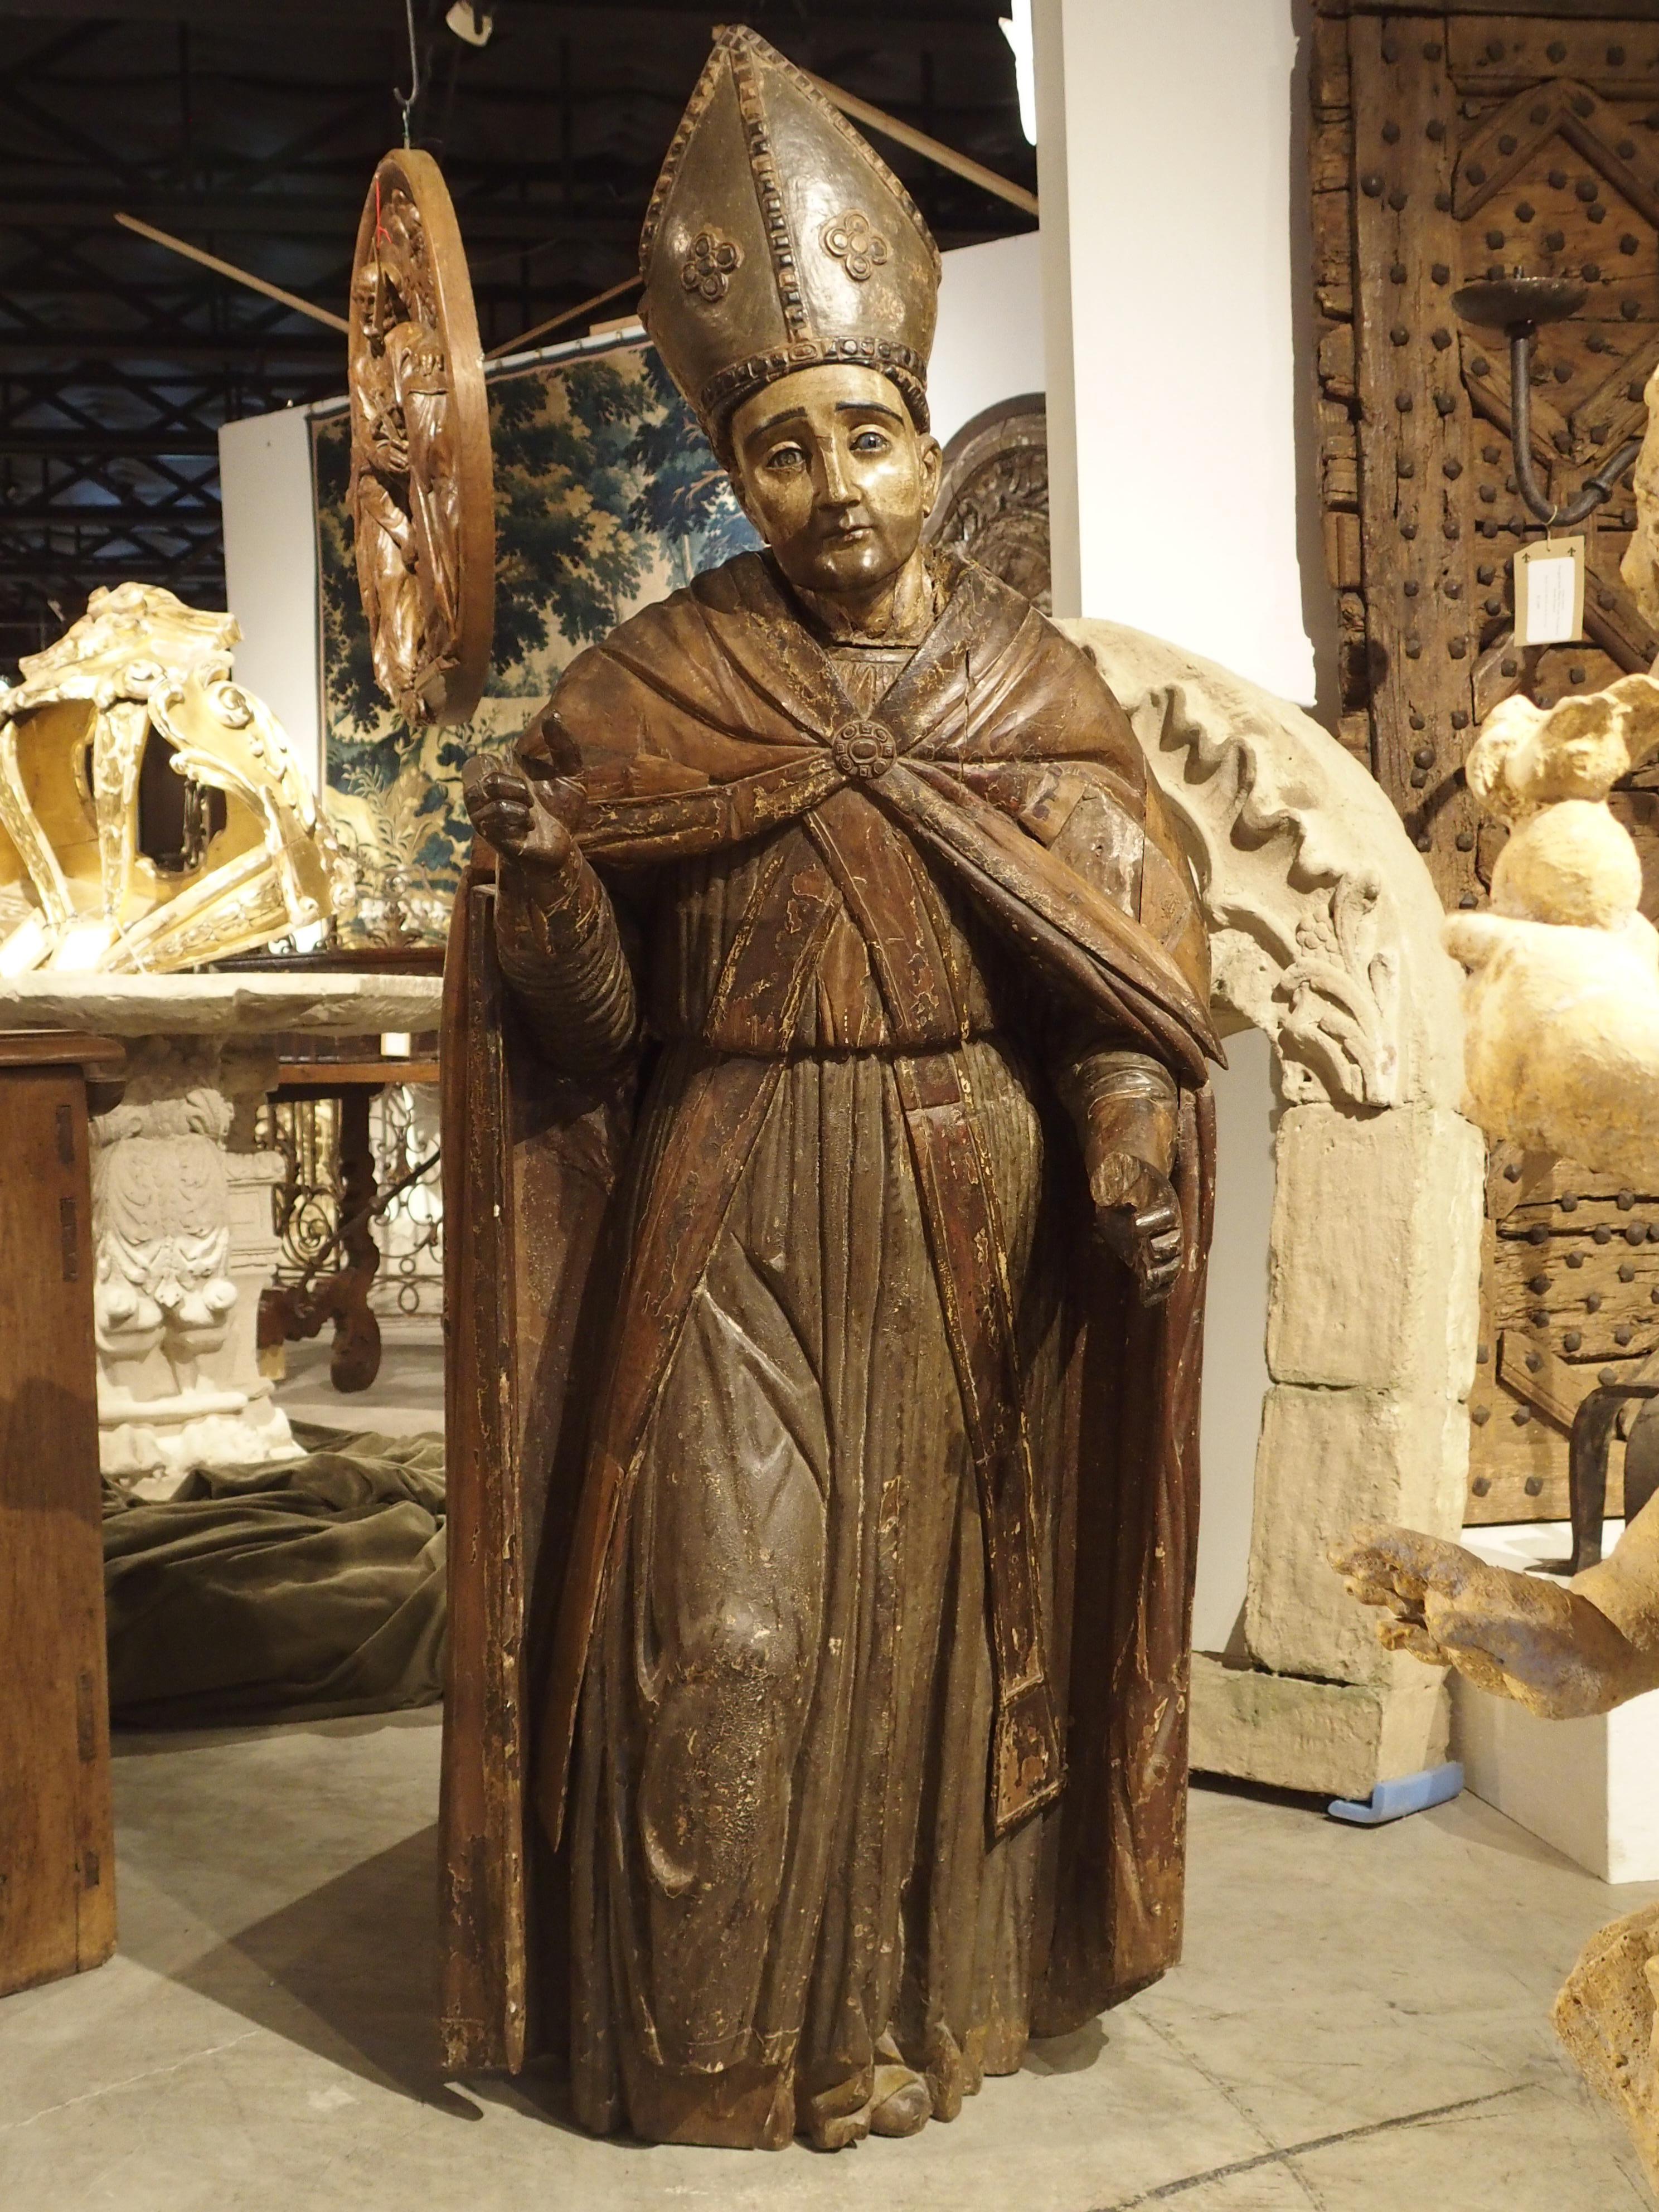 Diese 64 Zoll hohe antike Statue eines Bischofs stammt aus der Zeit um 1650 und ist deutschen Ursprungs. Ab dem 15. und 16. Jahrhundert gab es in ganz Mittel- und Westeuropa eine große Nachfrage nach kirchlichen Schnitzereien. Für Kirchen wurden